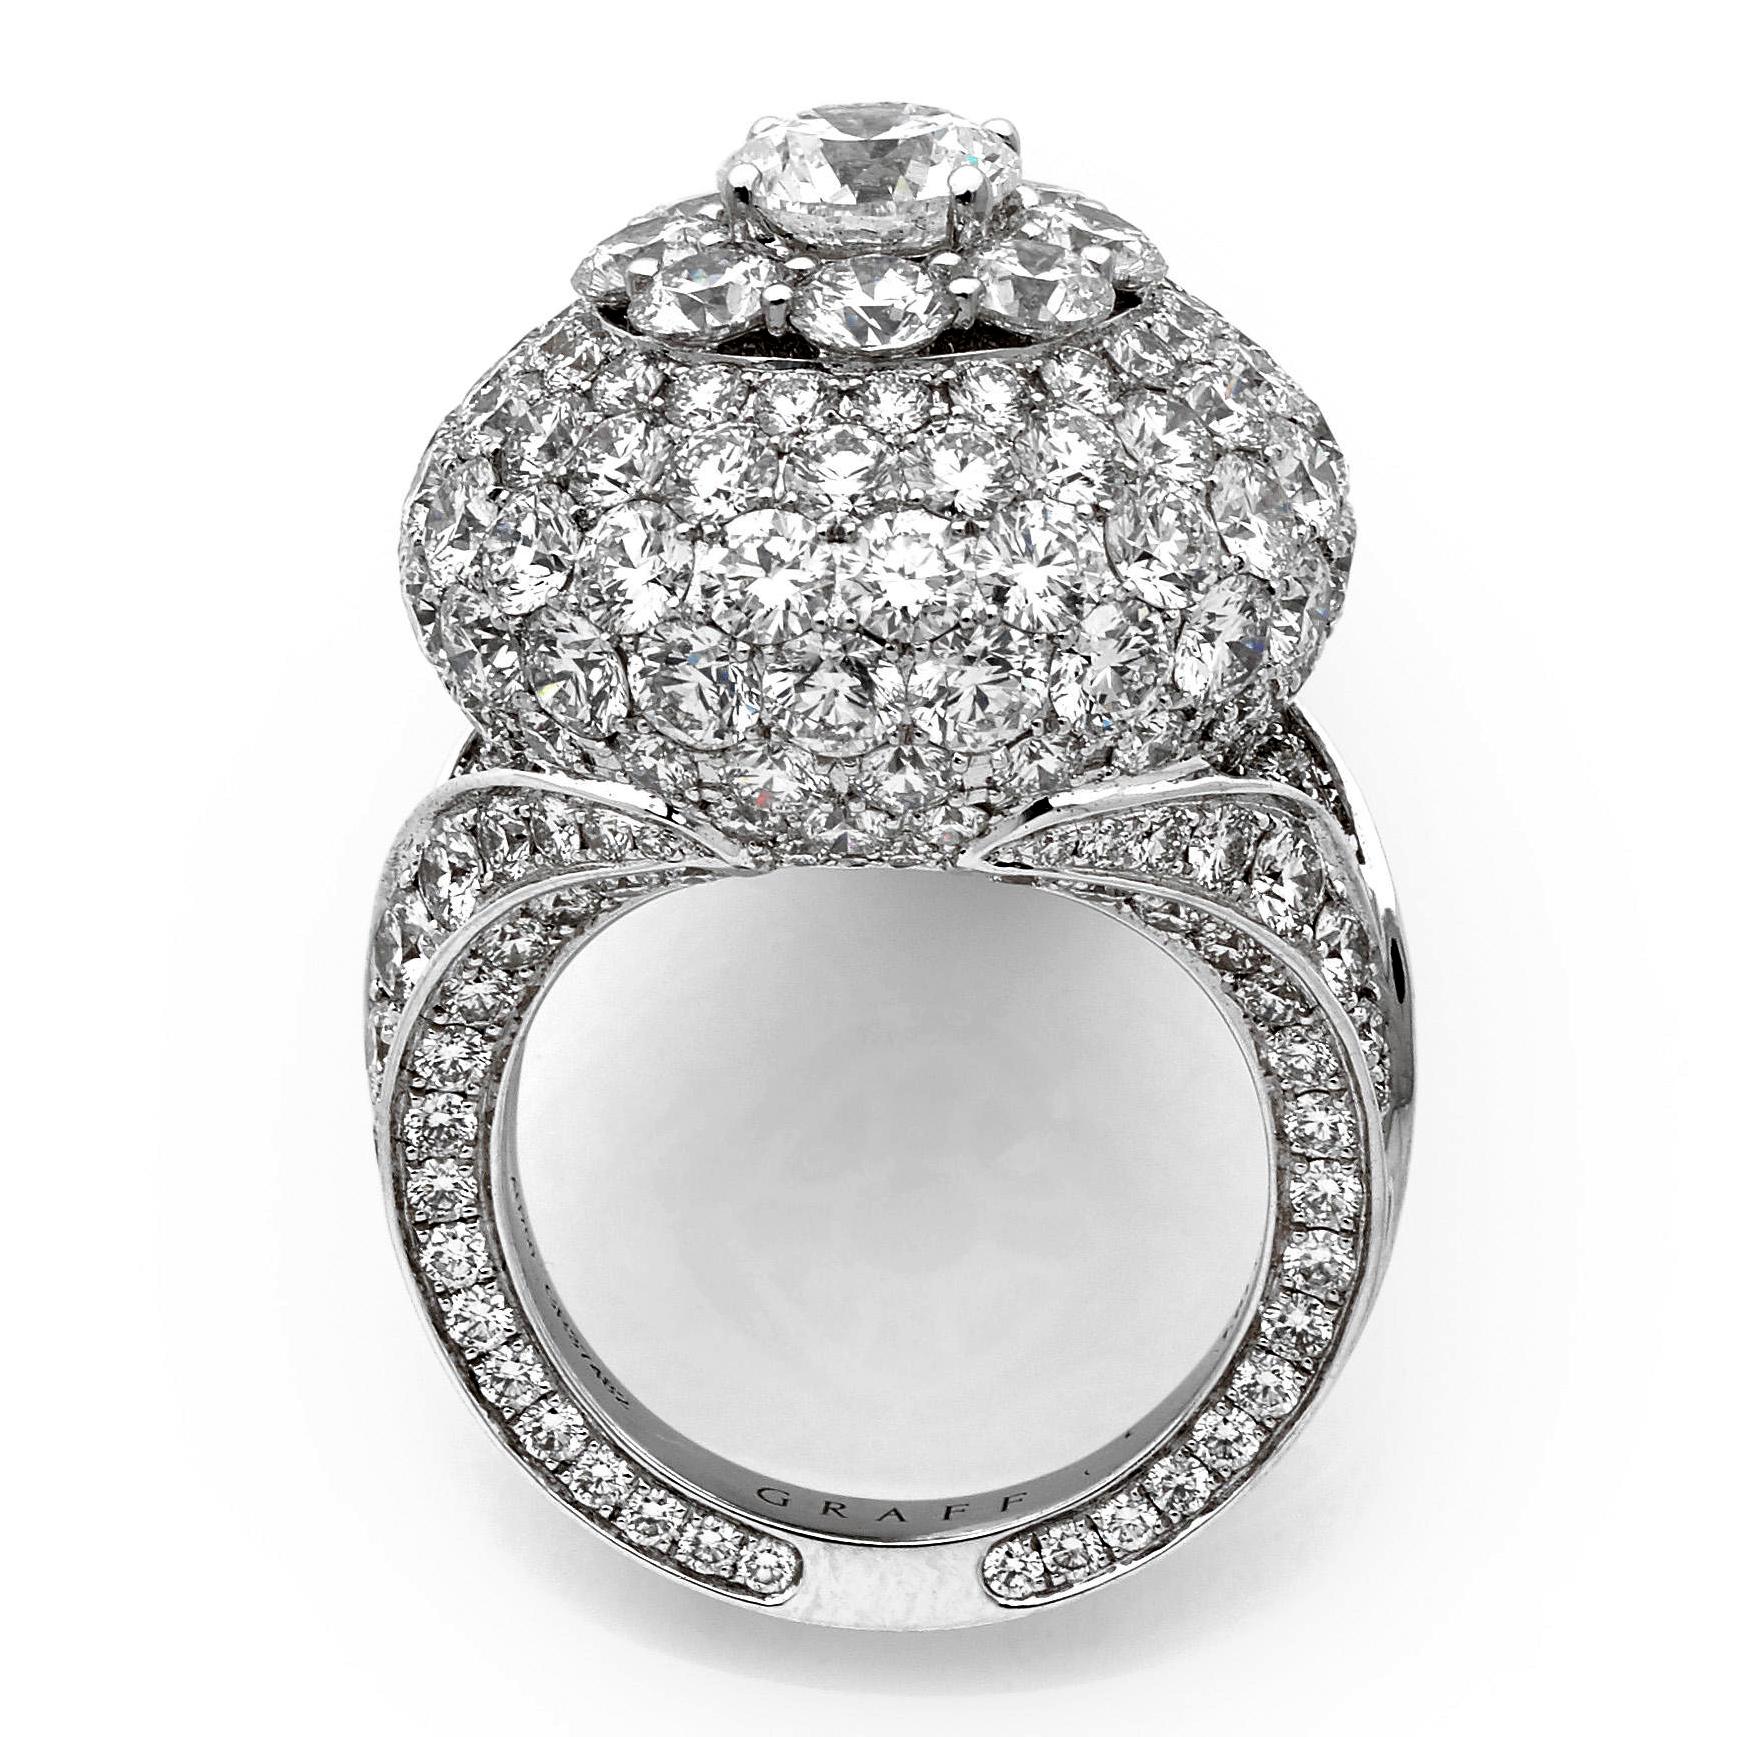 Une incroyable bague en diamant Graff présentant environ 10,08 cts des plus beaux diamants ronds de taille brillant, sertis dans un luxueux or blanc 18 carats.
Le droit a un poids de 12.grammes, et mesure une taille EU 49 et peut être redimensionné